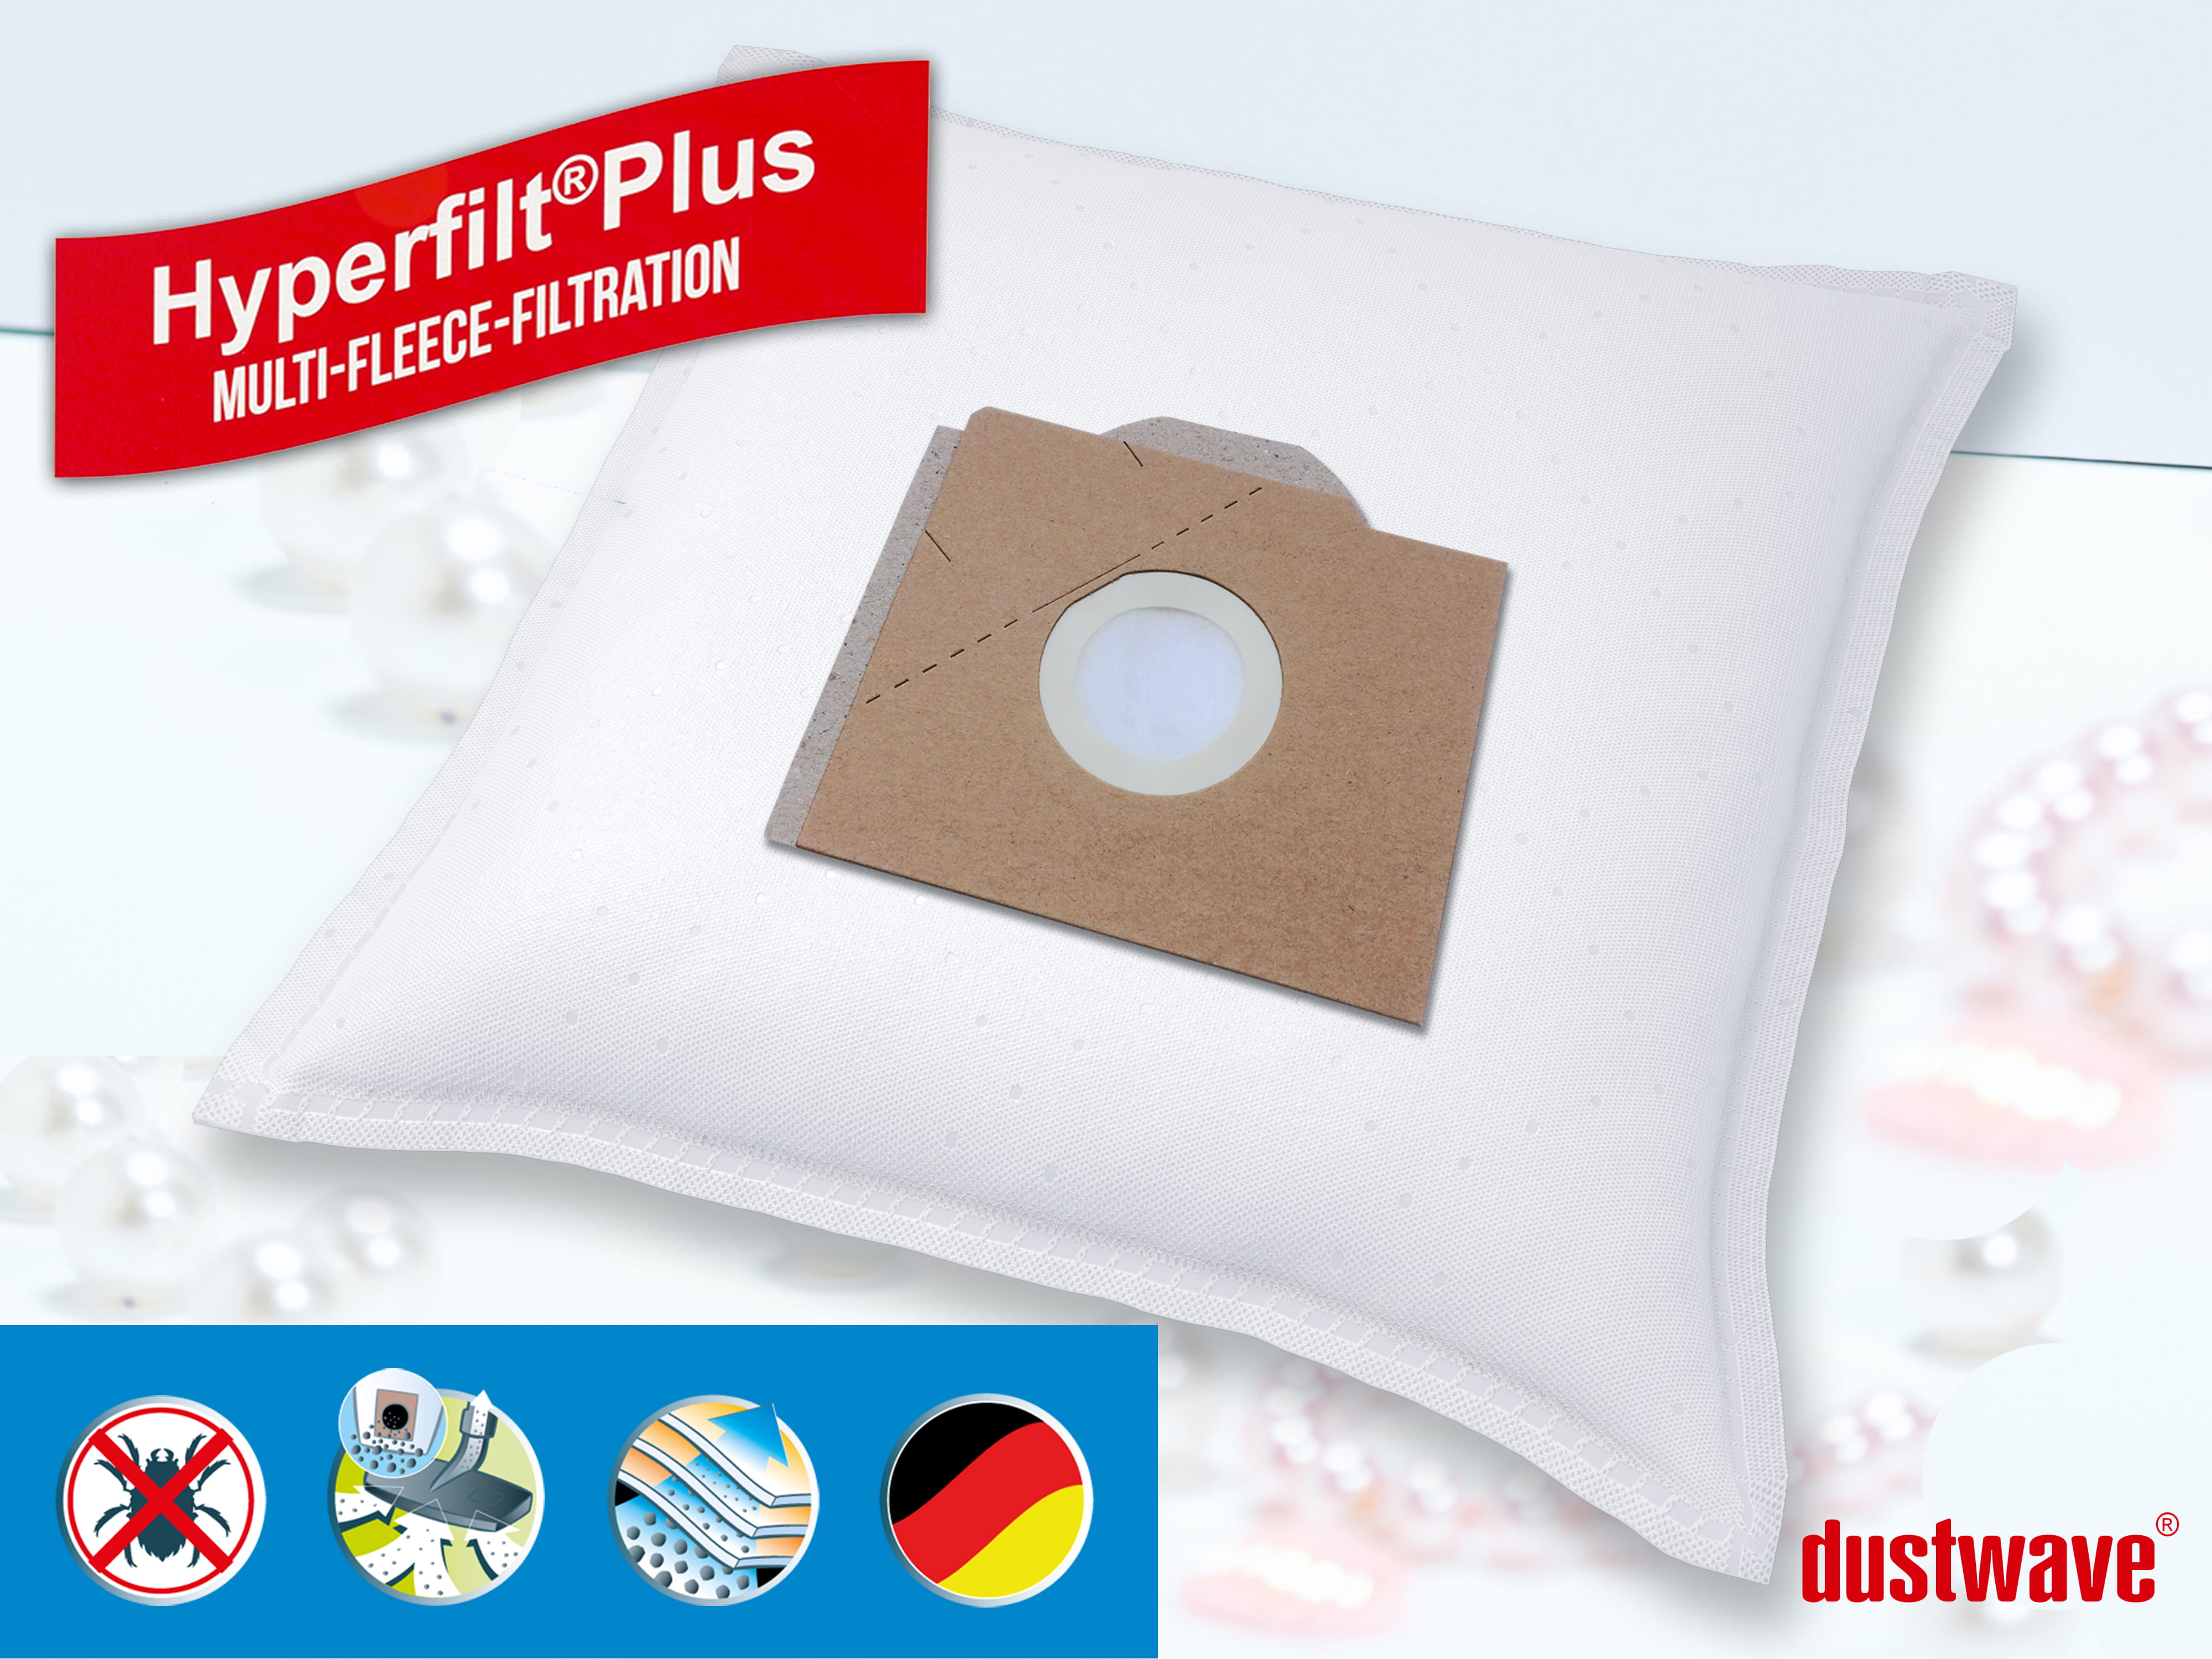 Dustwave® 20 Staubsaugerbeutel für Hoover S2810 - hocheffizient, mehrlagiges Mikrovlies mit Hygieneverschluss - Made in Germany